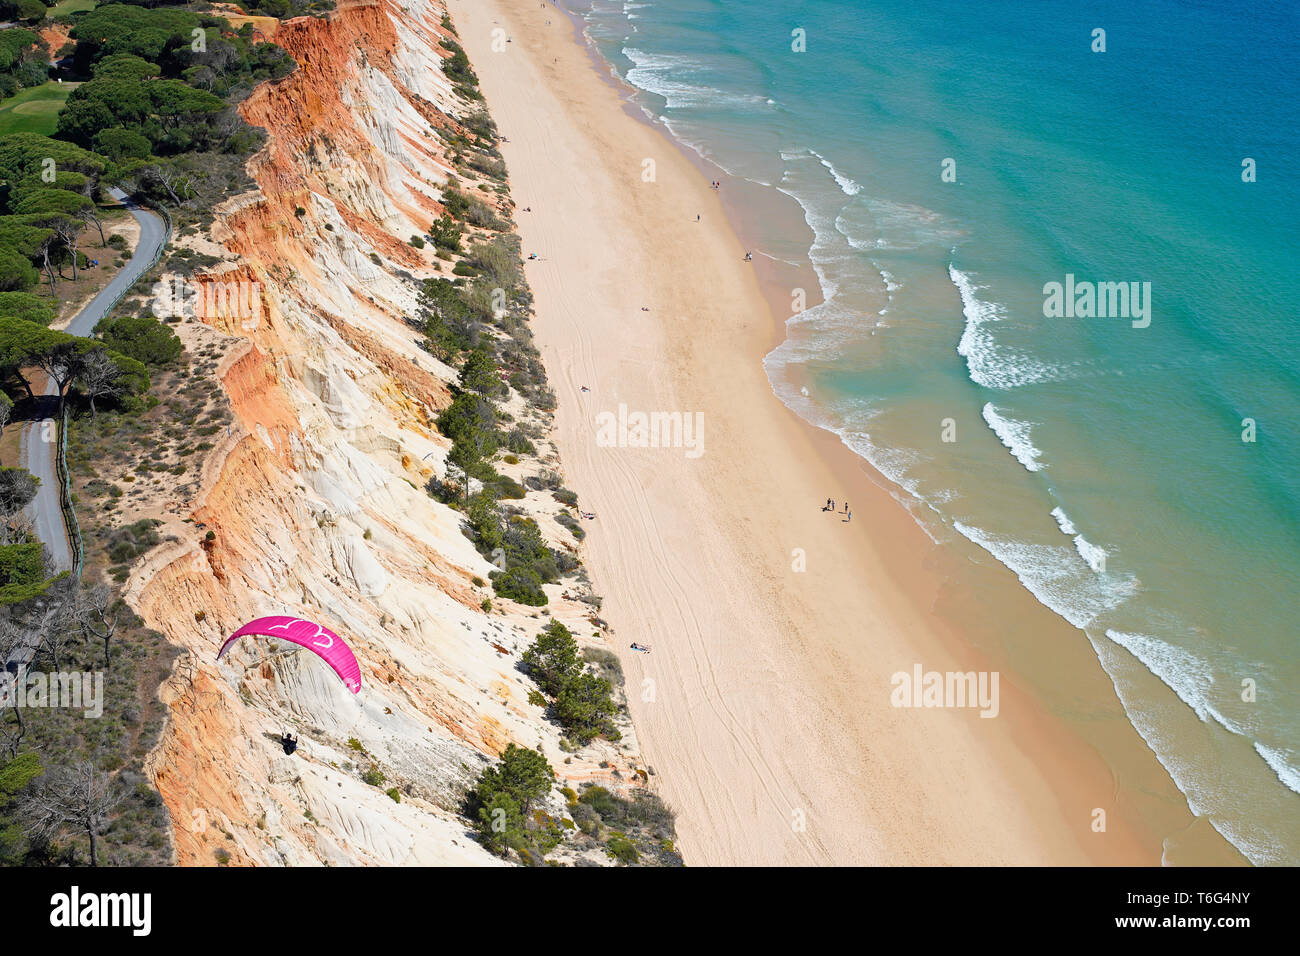 VUE AÉRIENNE.Parapente en utilisant la brise de mer pour s'envoler le long d'une falaise de bord de mer colorée.Praia da Falésia, Albufeira, Algarve, Portugal. Banque D'Images